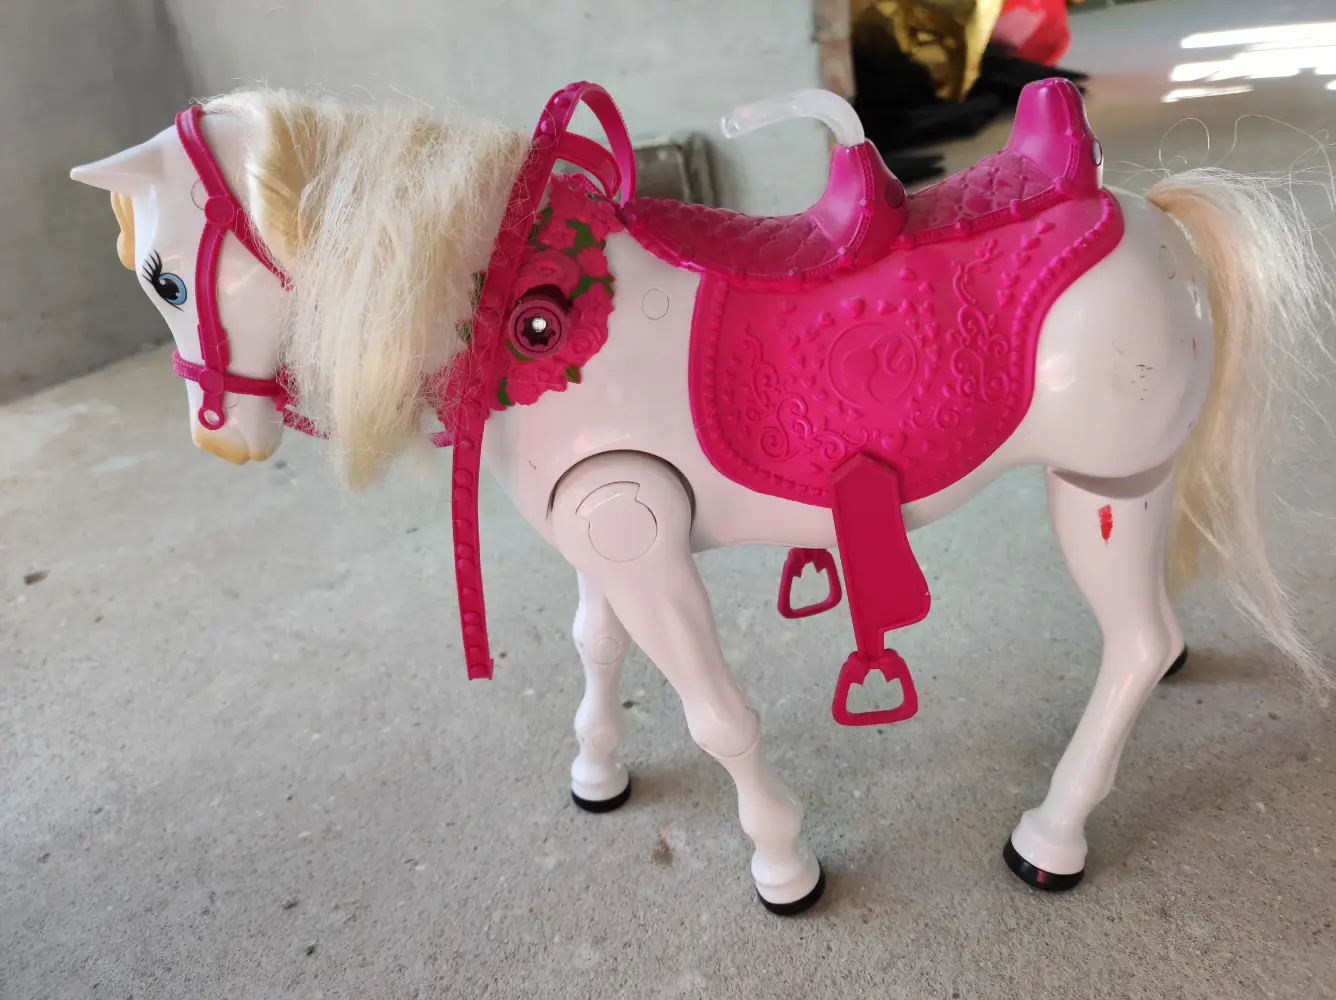 Køb Barbie med gående hest af Mette på Reshopper · Shop secondhand børn, mor bolig